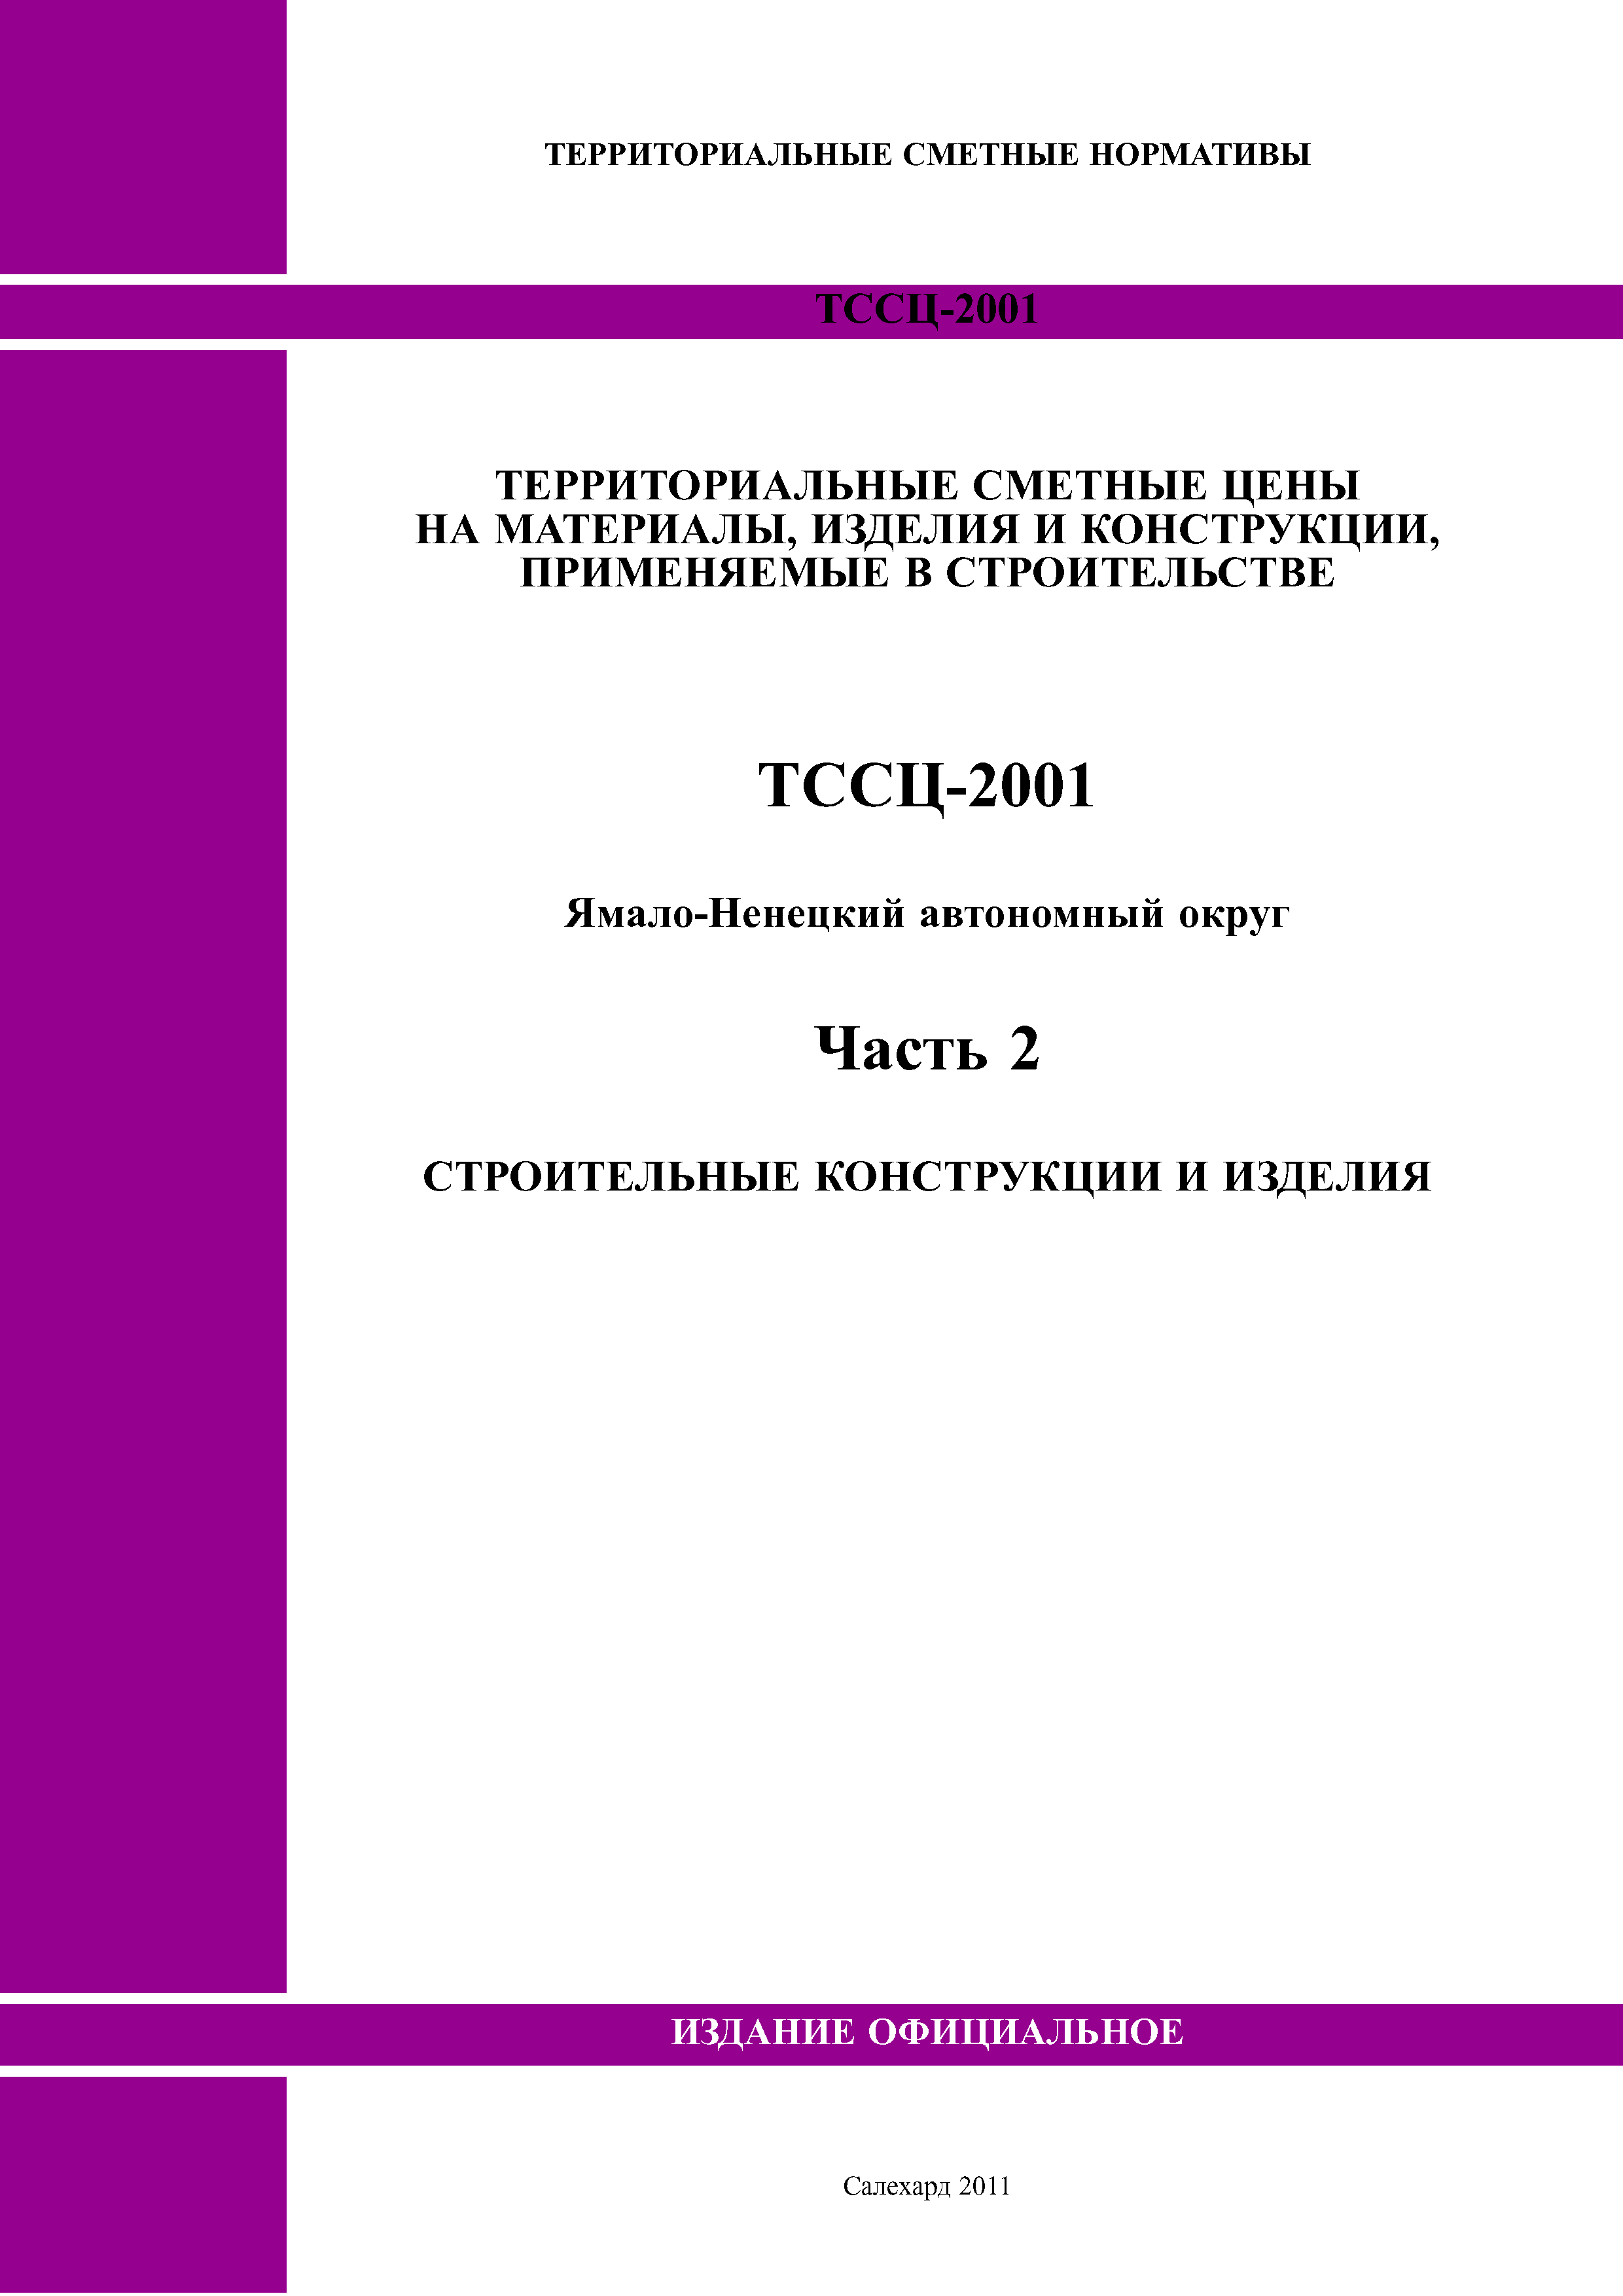 ТССЦ Ямало-Ненецкий автономный округ 02-2001